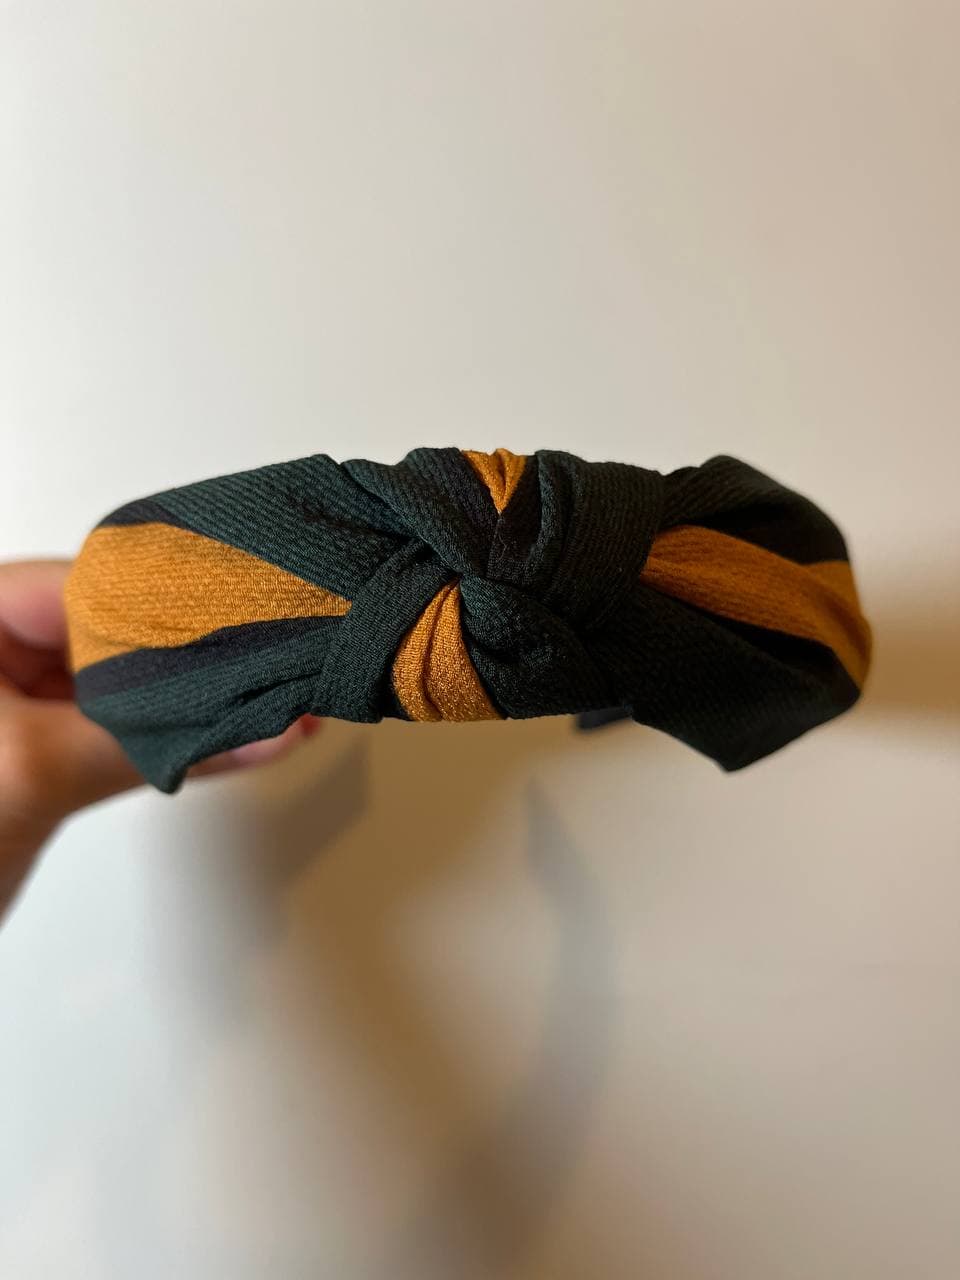 韓式人工髮箍- 深綠配泥黃髮箍